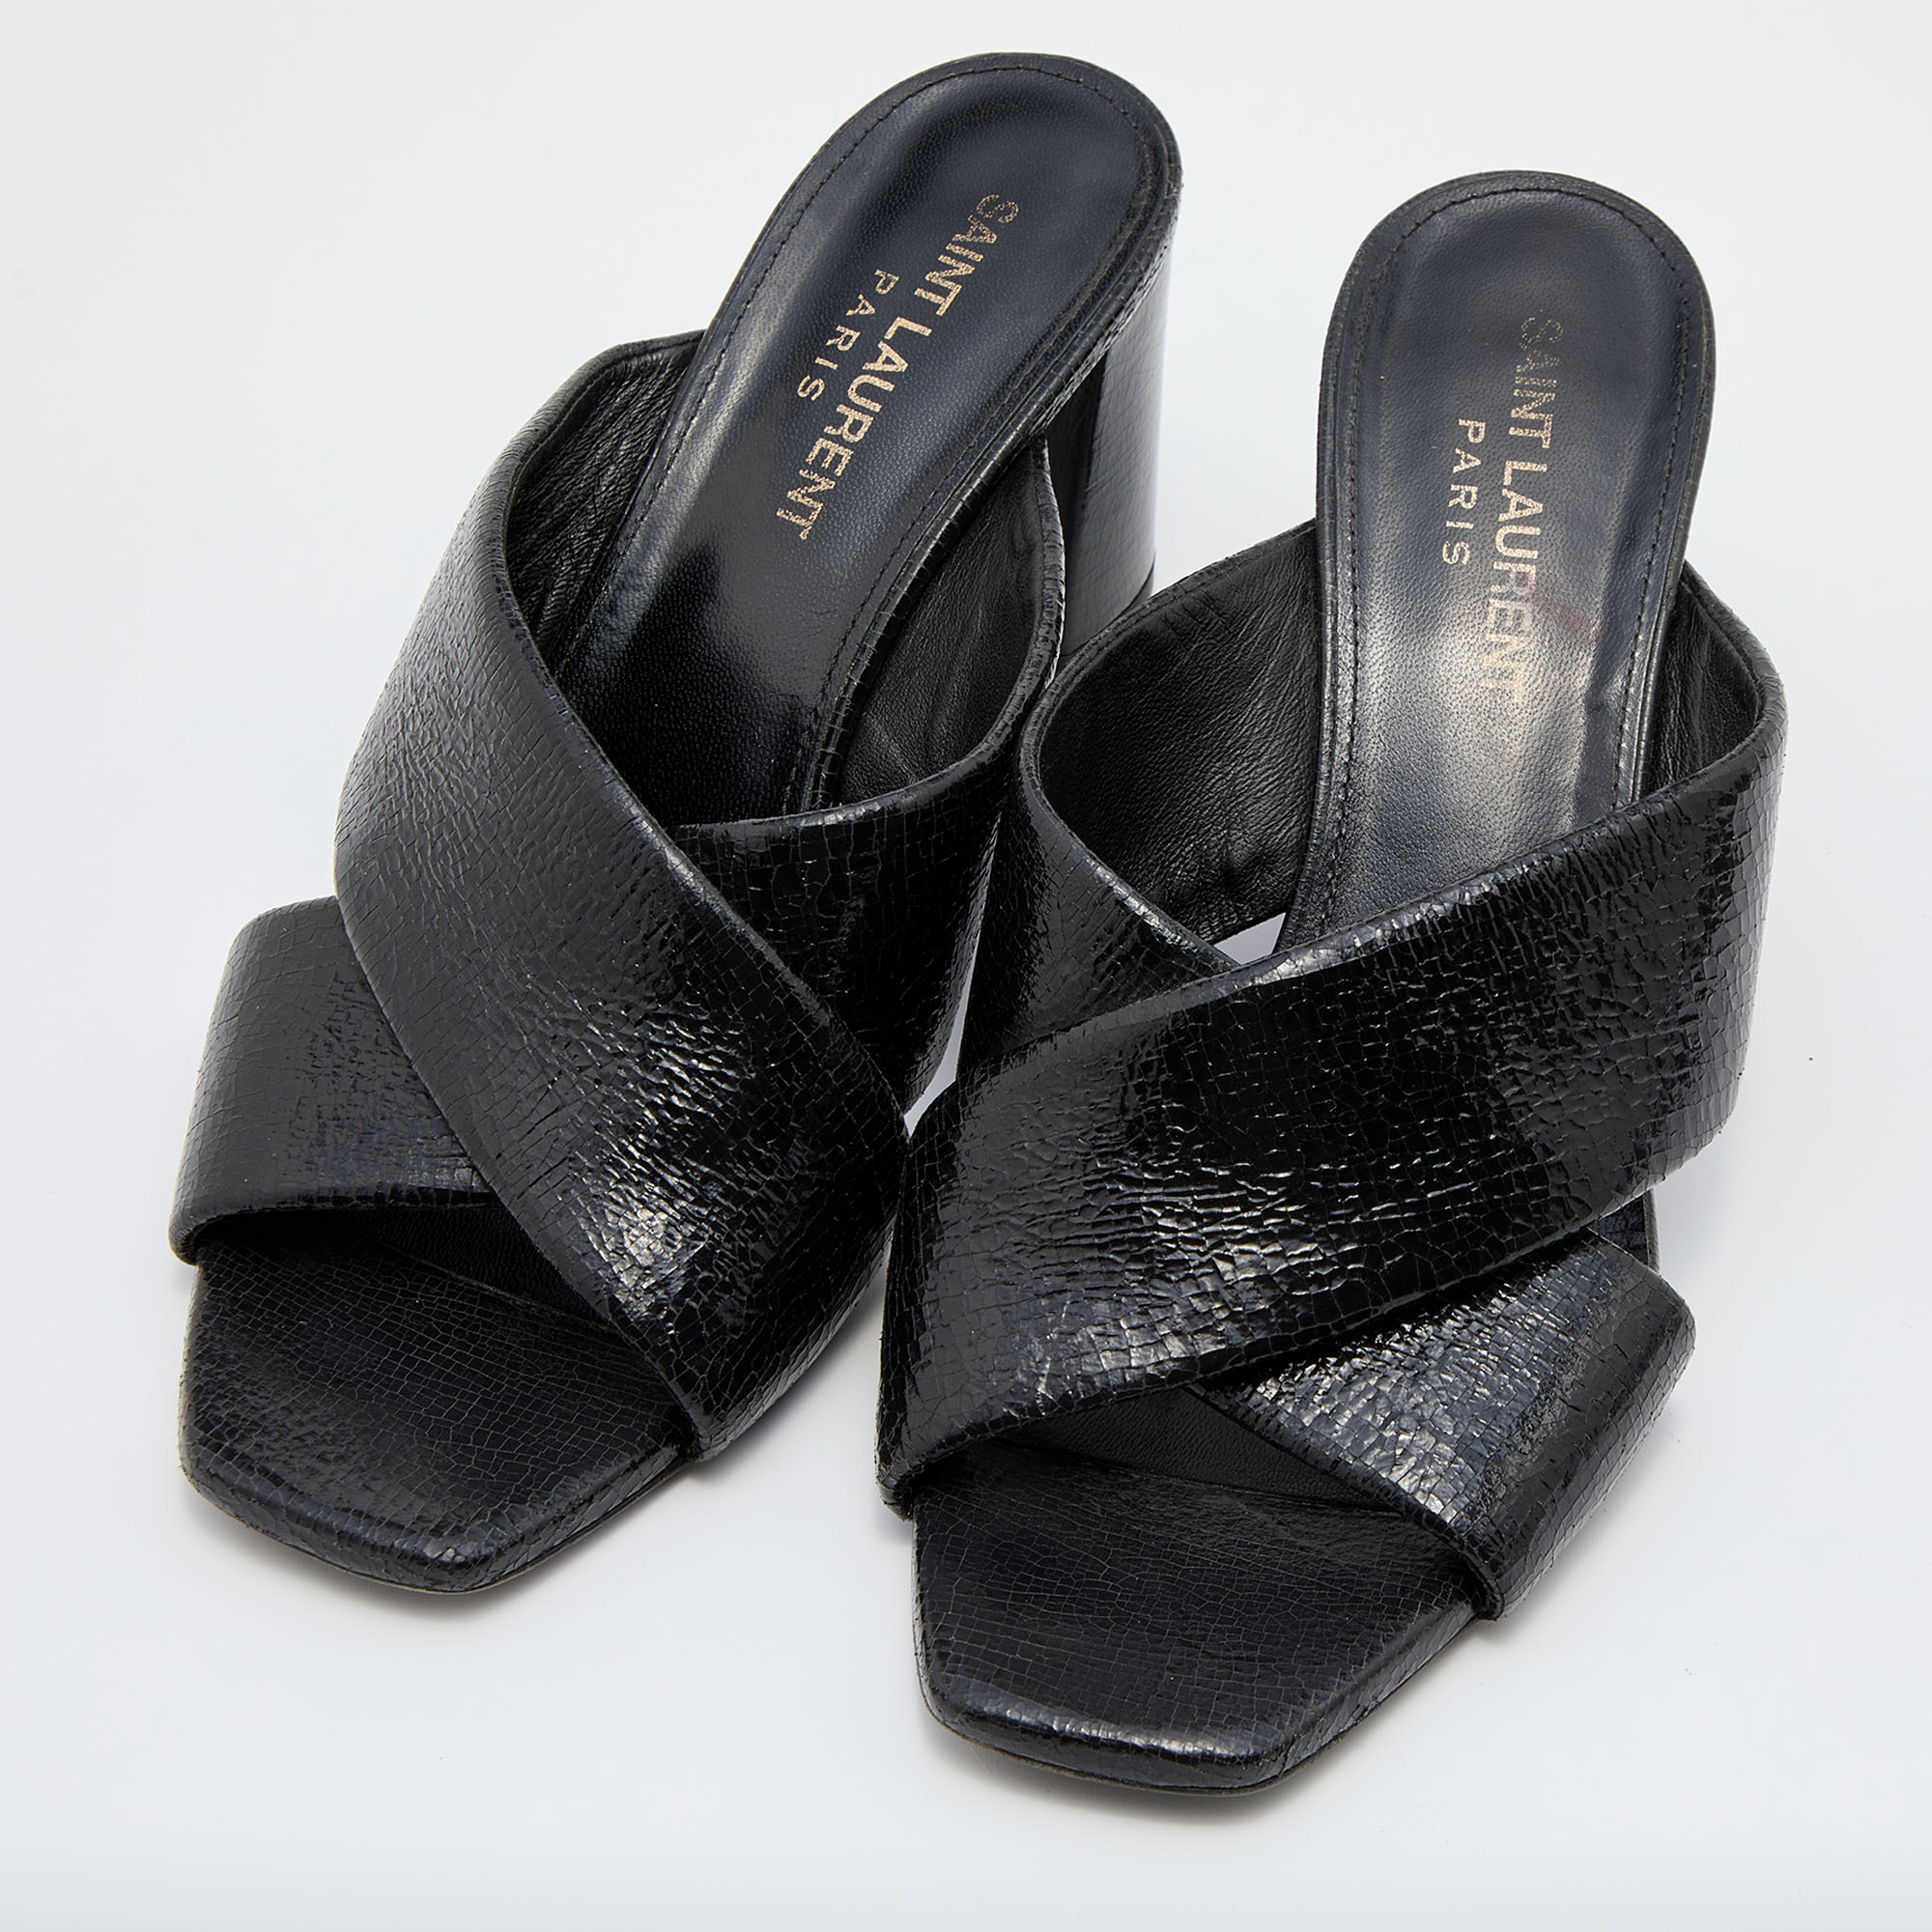 

Saint Laurent Black Patent Leather Loulou Cross Strap Slide Sandals Size